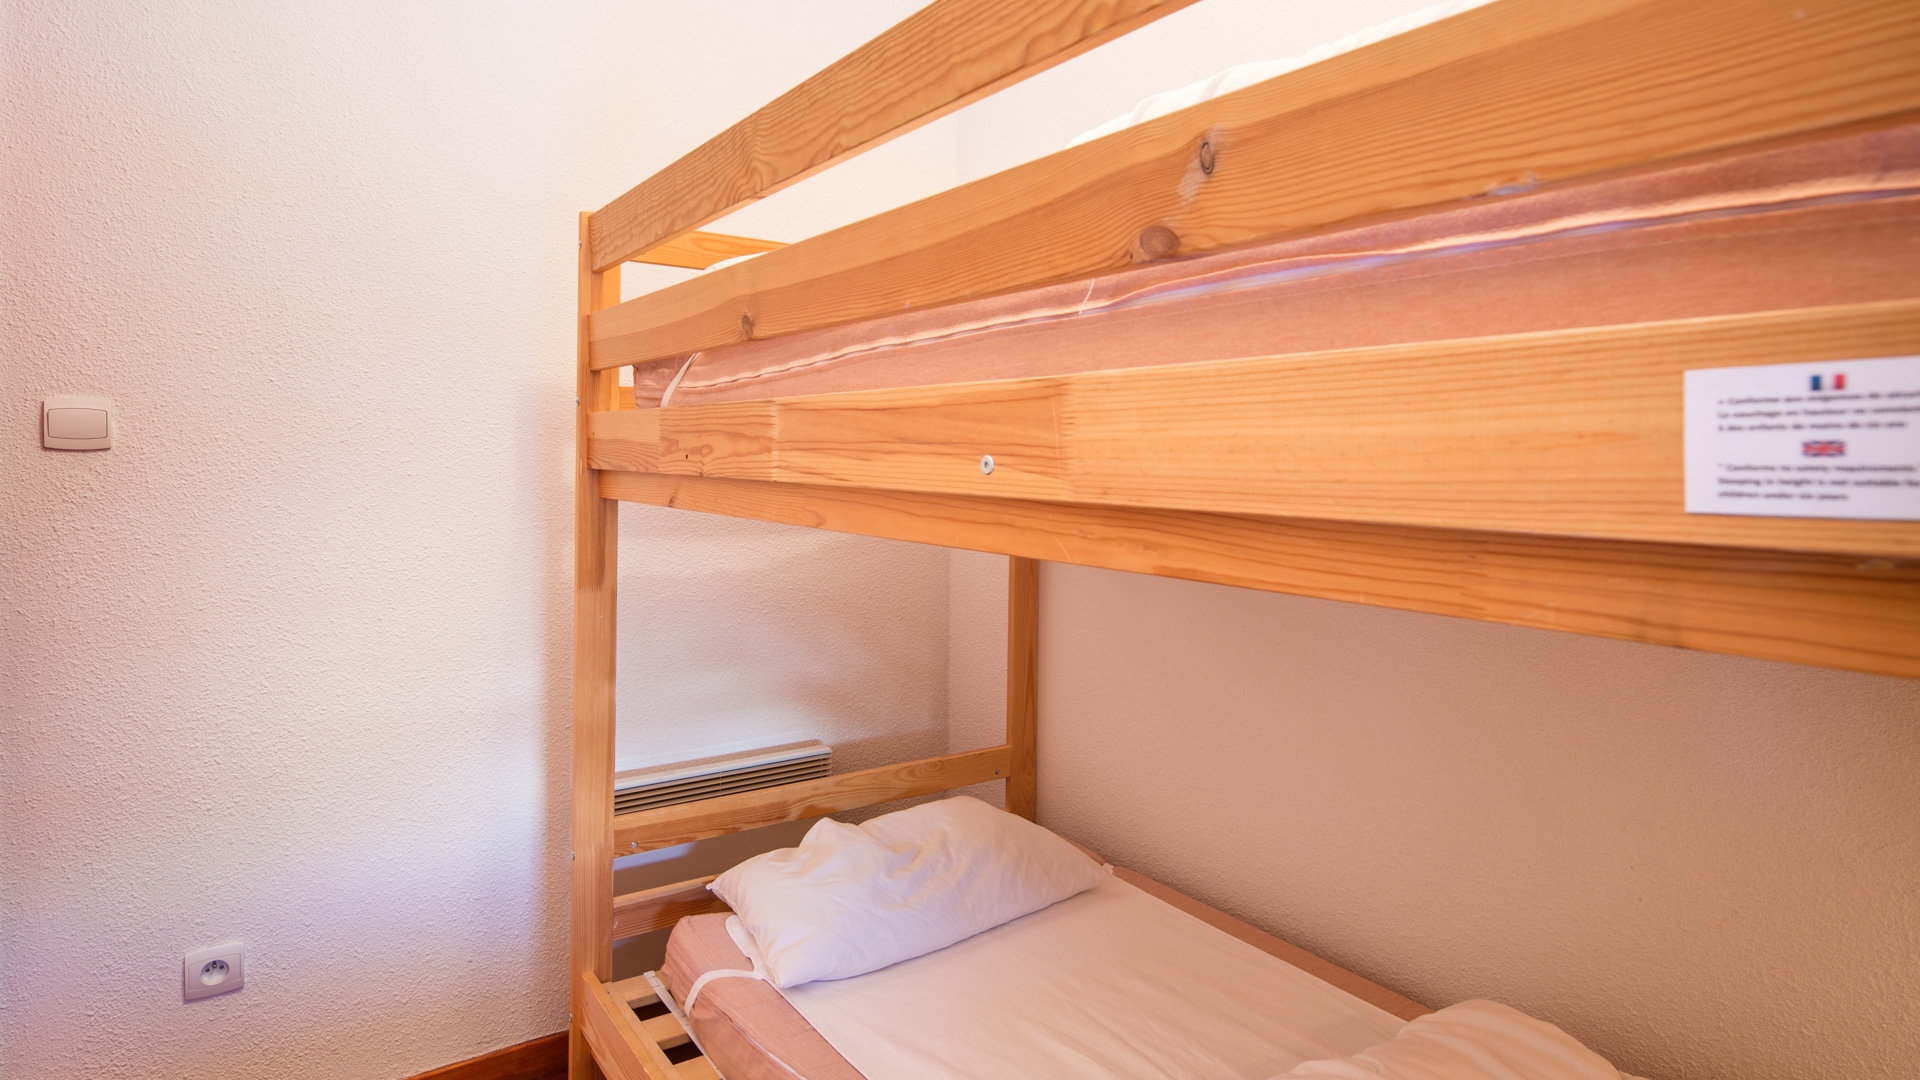 Les Chalets de la Ramoure in Valfréjus: Ferienwohnung für 6 Personen: Schlafzimmer (Beispiel)